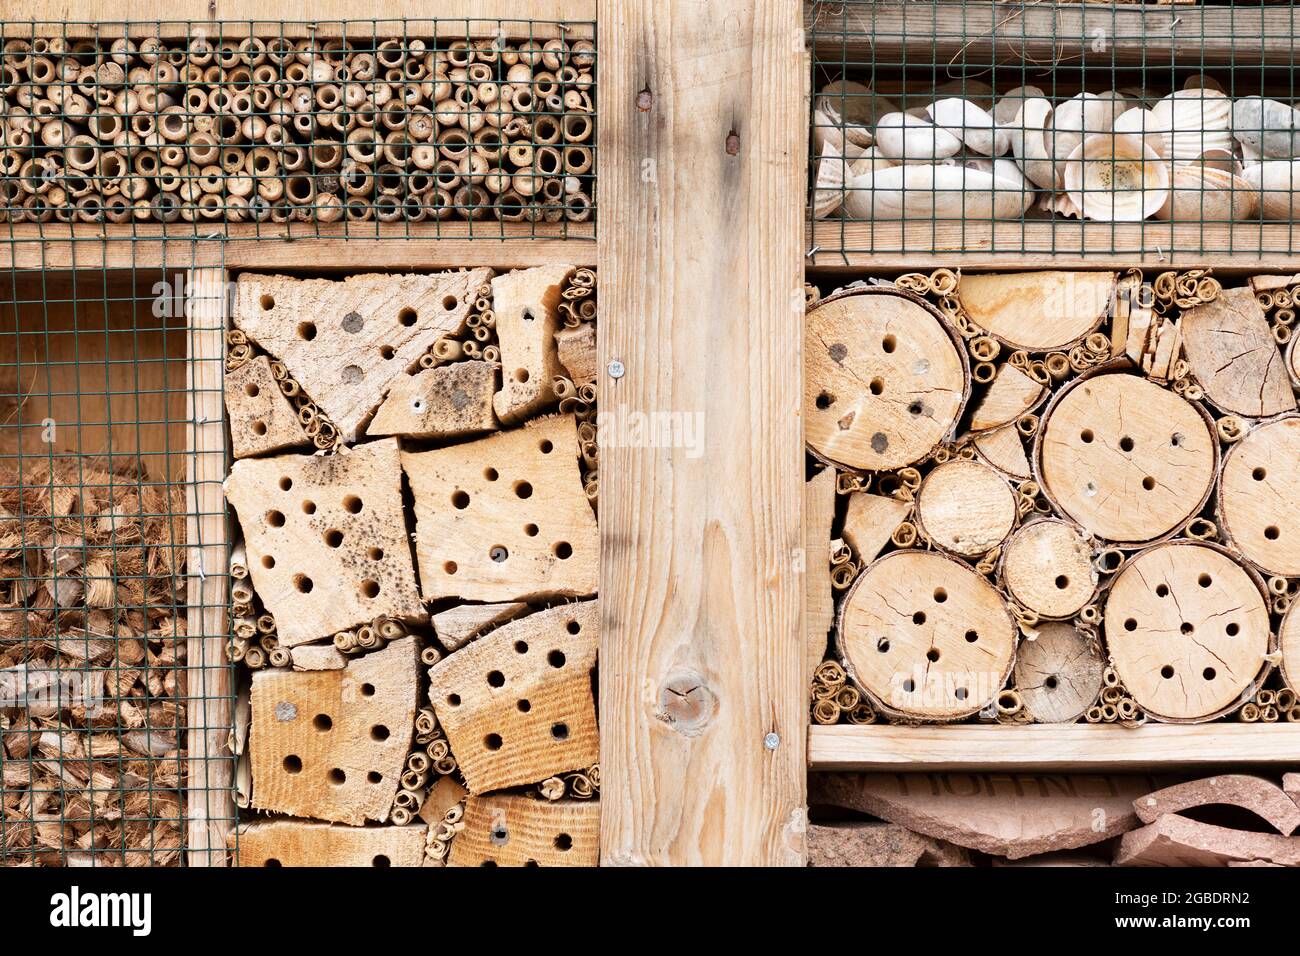 Insektenhotel-Detail aus natürlichem Material wie Holz, Ästen, Bambusstäbchen und Muscheln für eine bessere Artenvielfalt und hilft unserer Natur Stockfoto